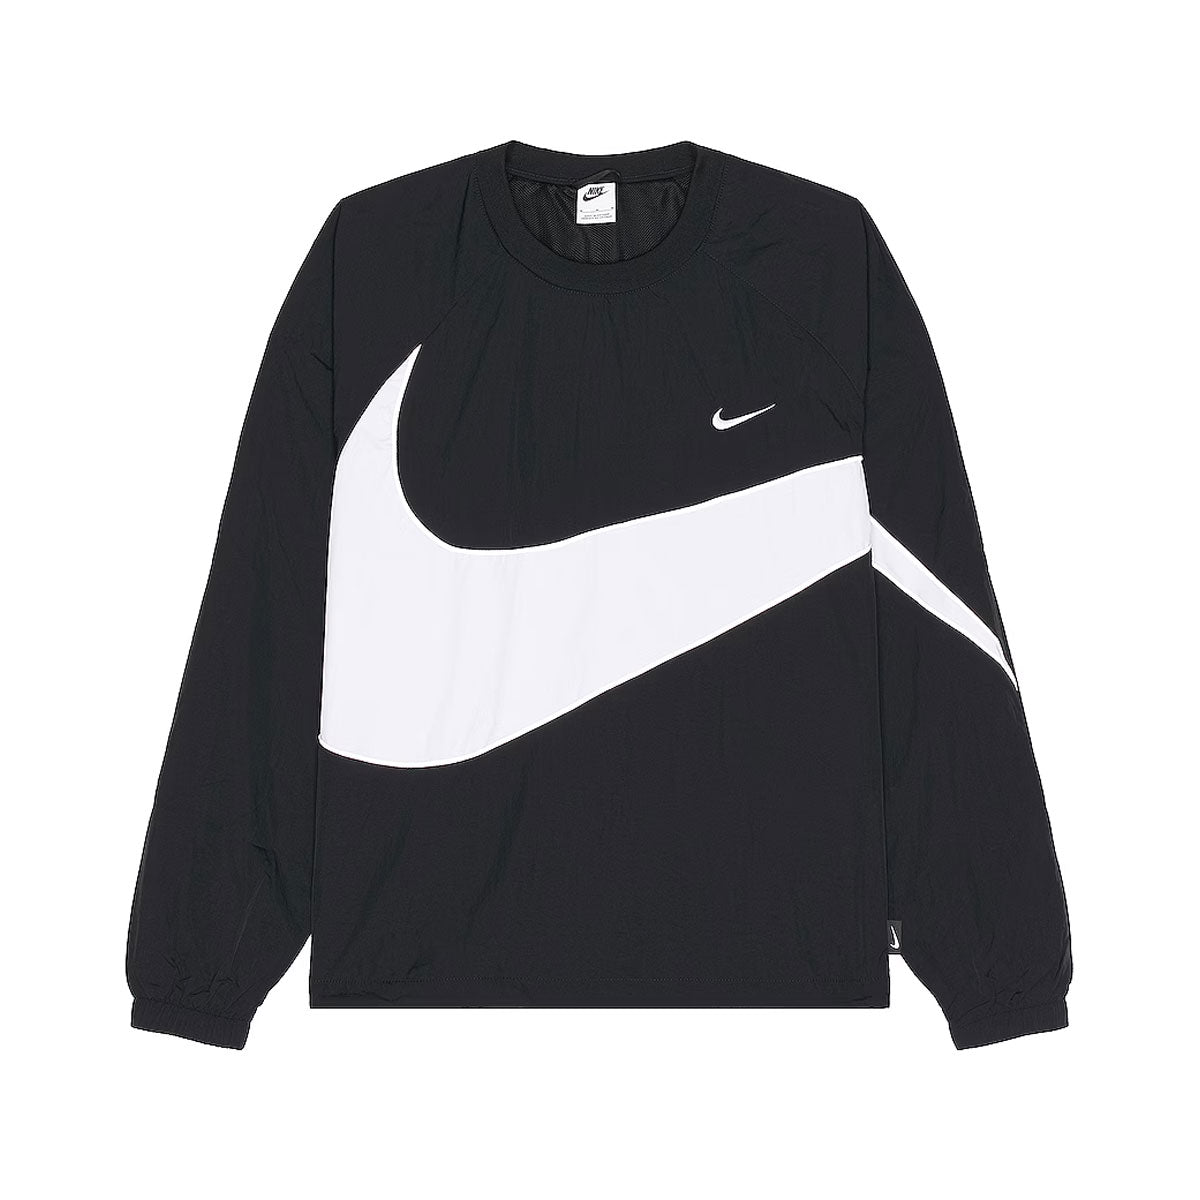 Nike Men's Swoosh Woven Jacket Black White